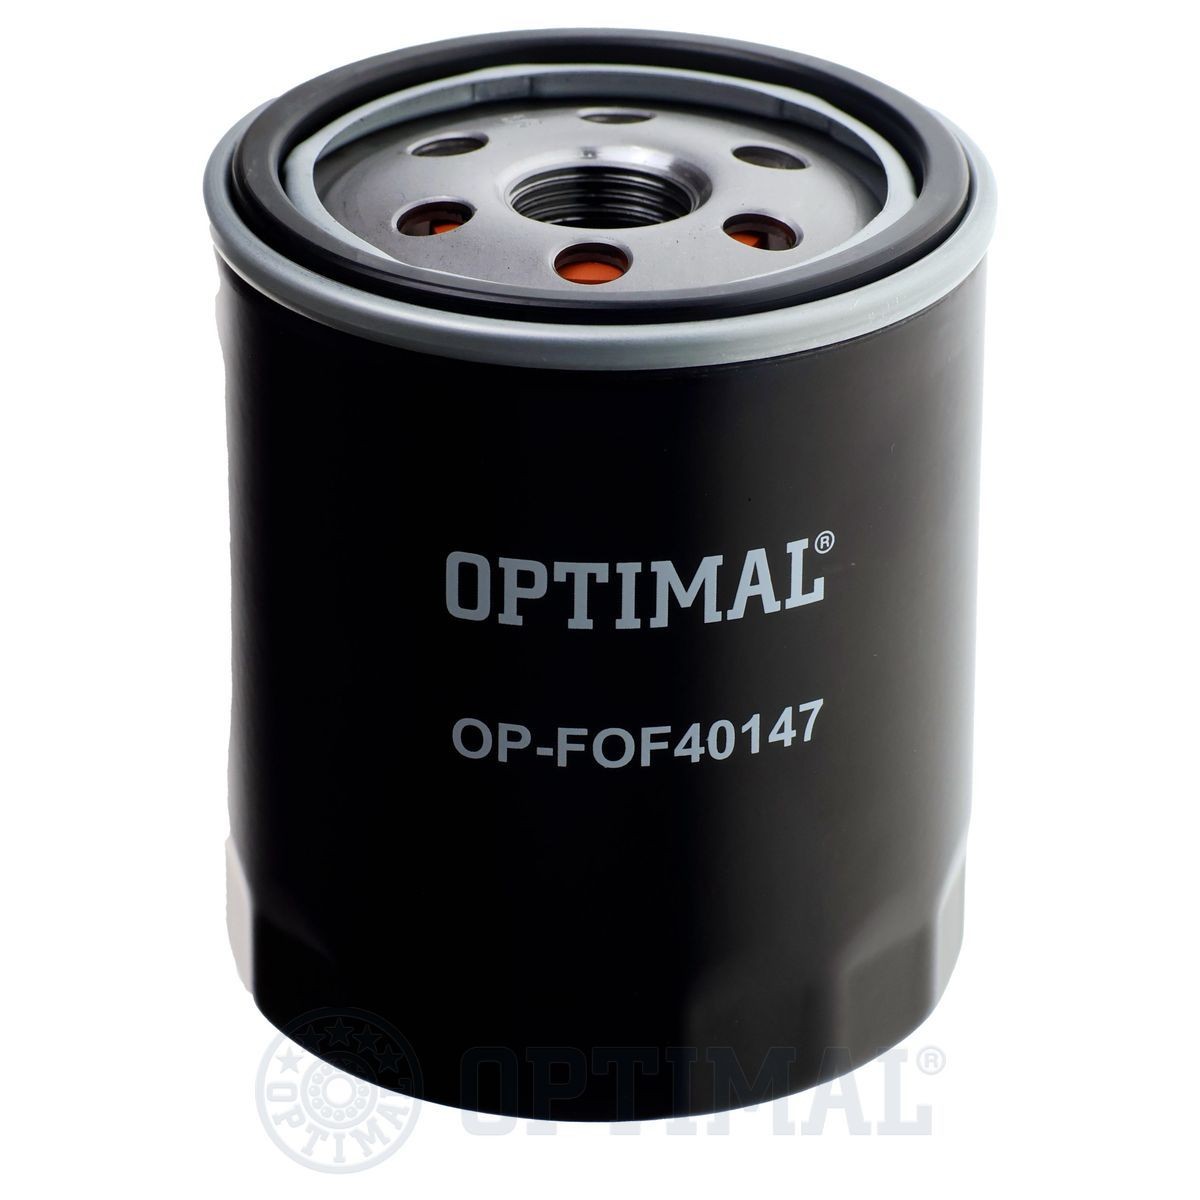 OPTIMAL OP-FOF40147 Oil filter TCA10018